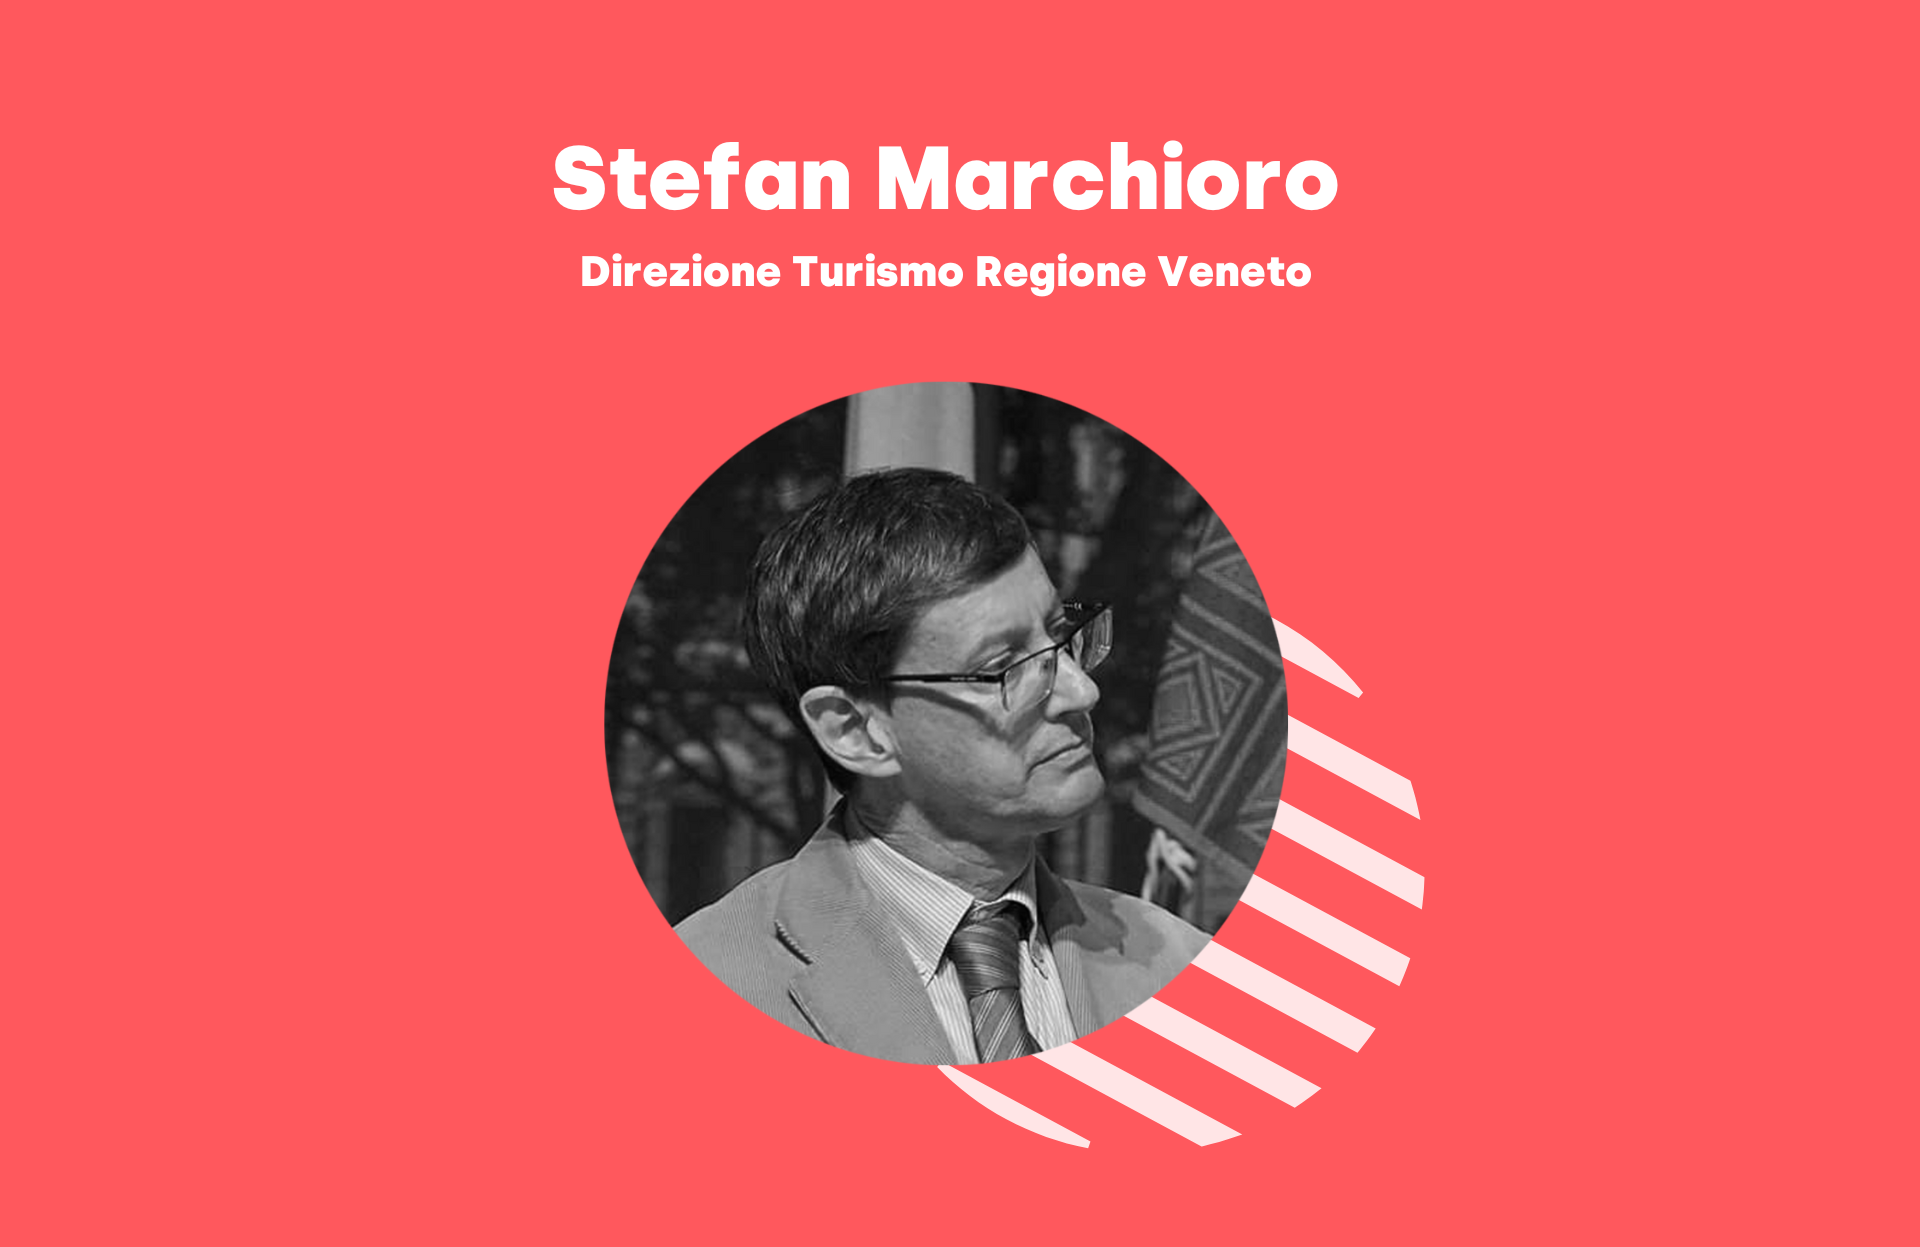 Stefan Marchioro Turismo Veneto